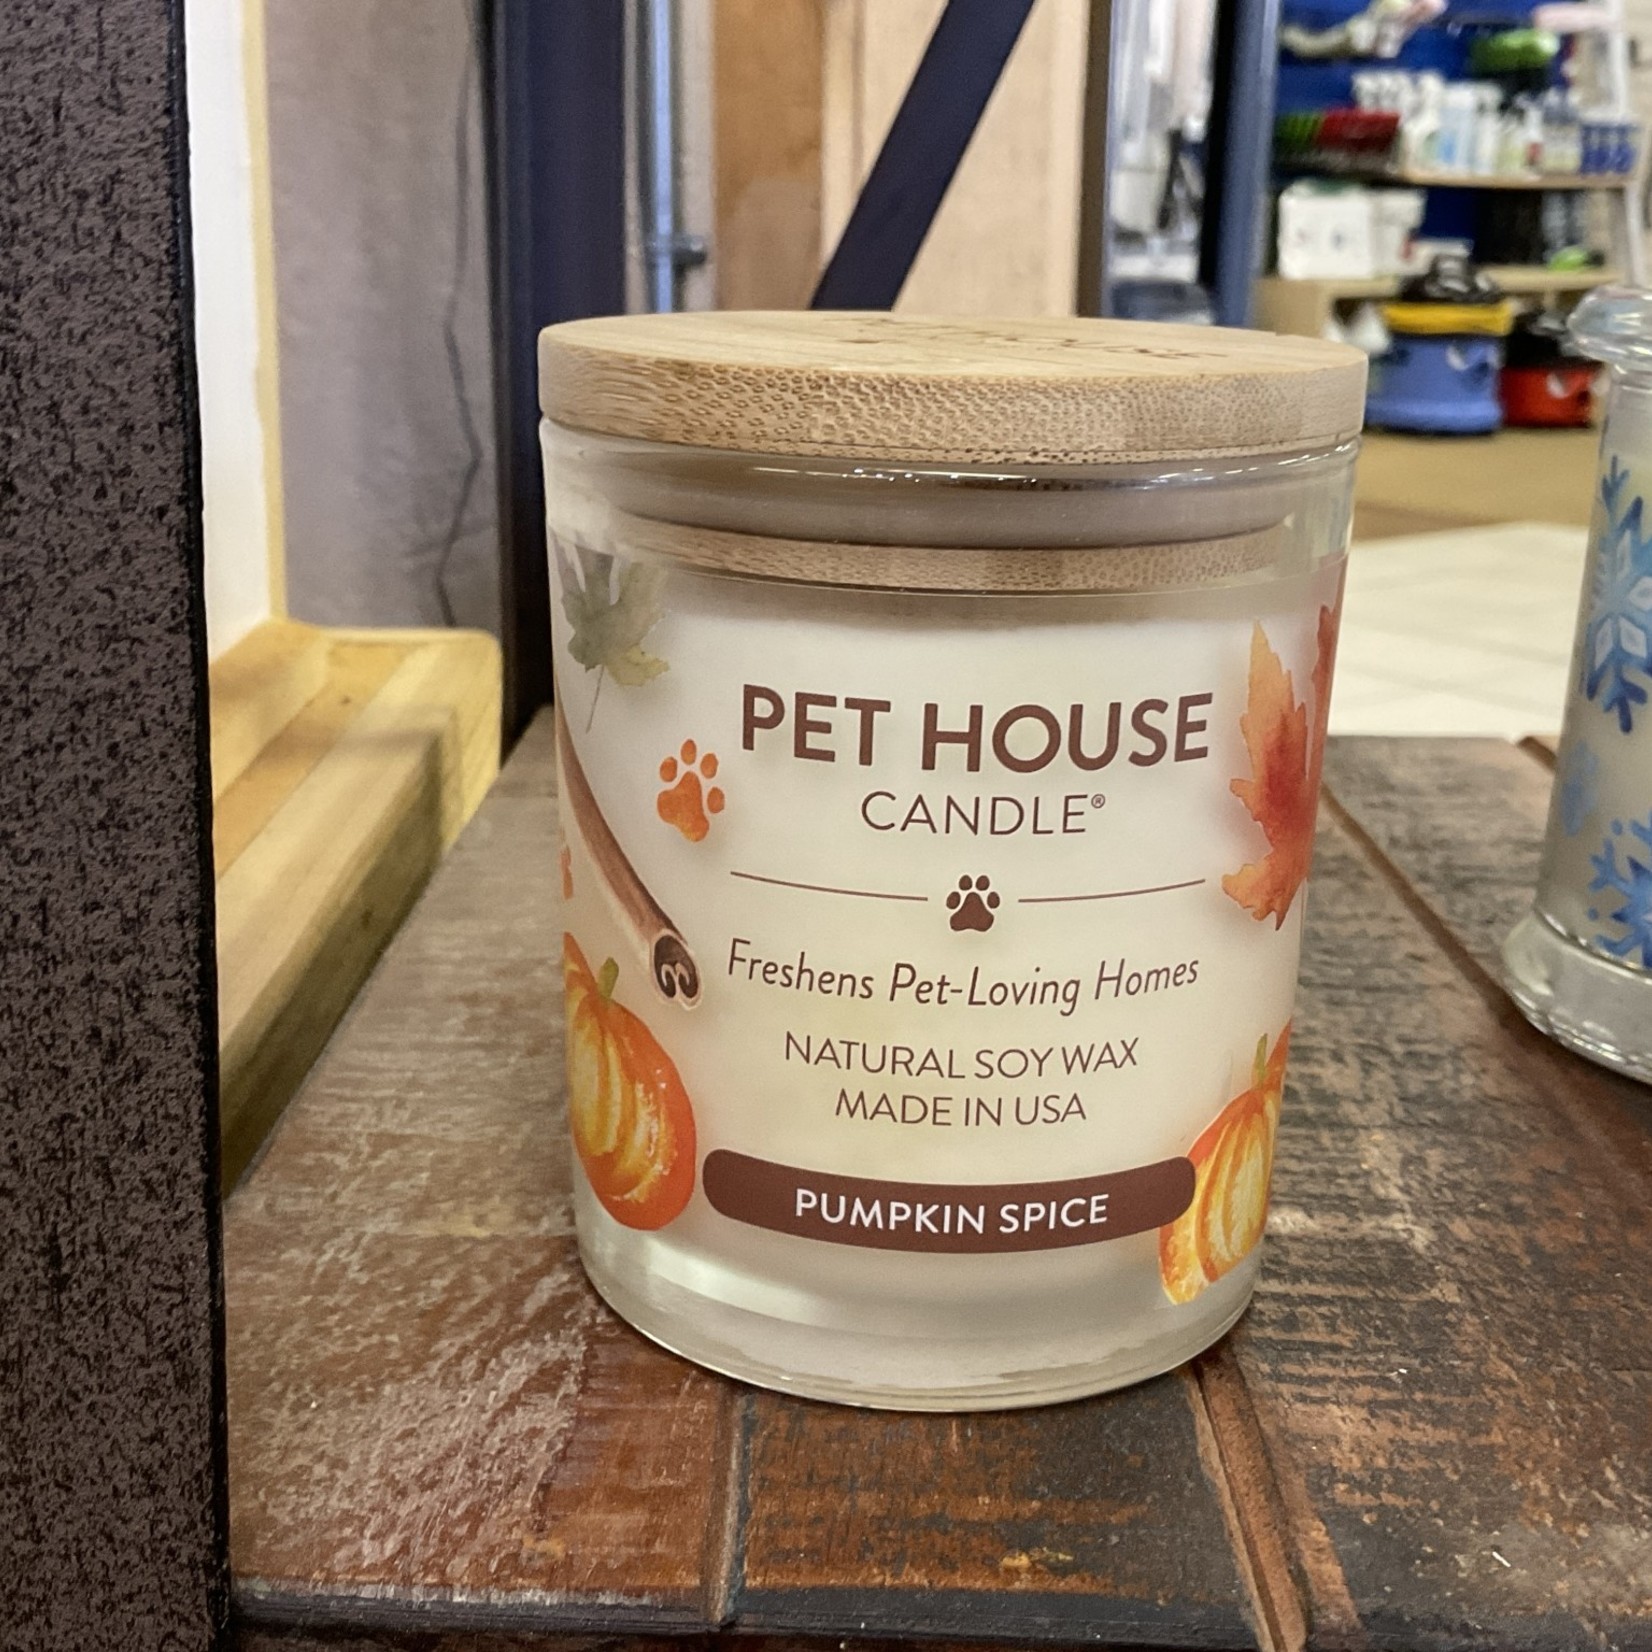 Pet House Pumpkin Spice